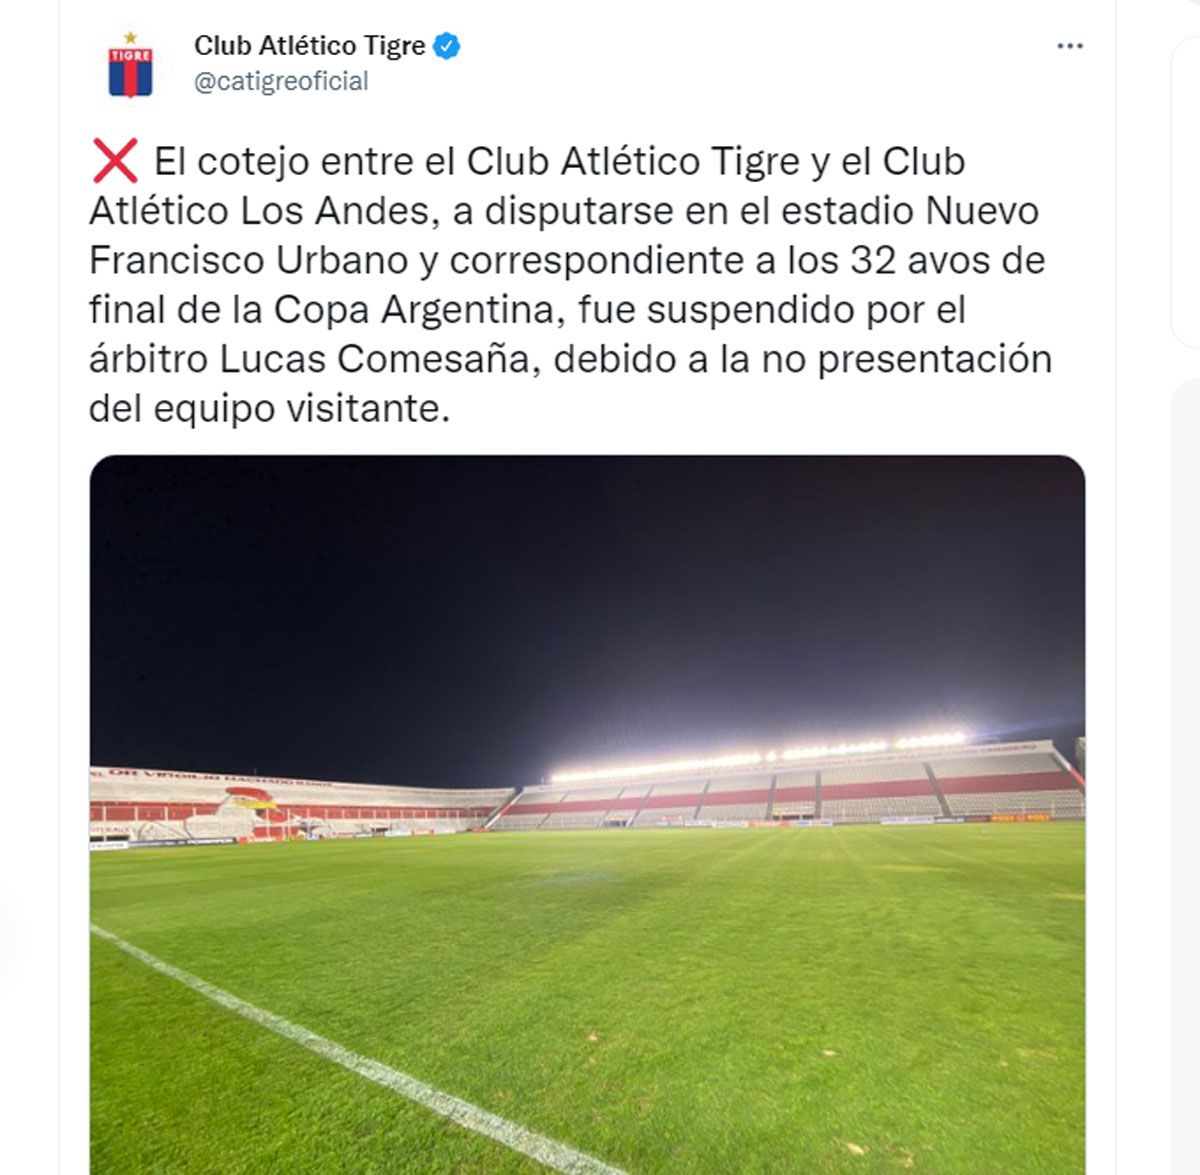 La publicación de Tigre habla de suspensión y no presentación del equipo visitante